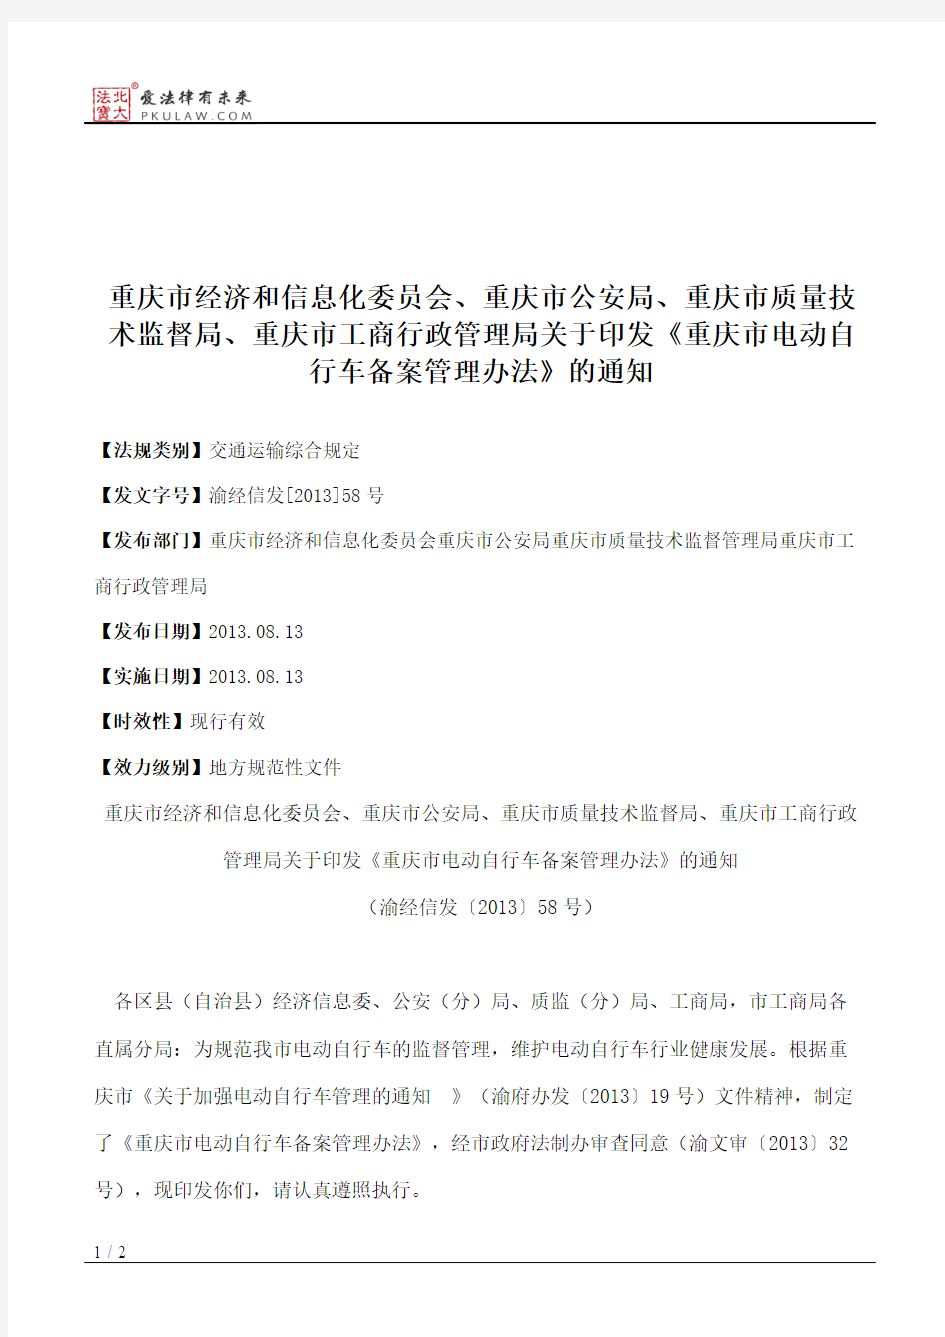 重庆市经济和信息化委员会、重庆市公安局、重庆市质量技术监督局